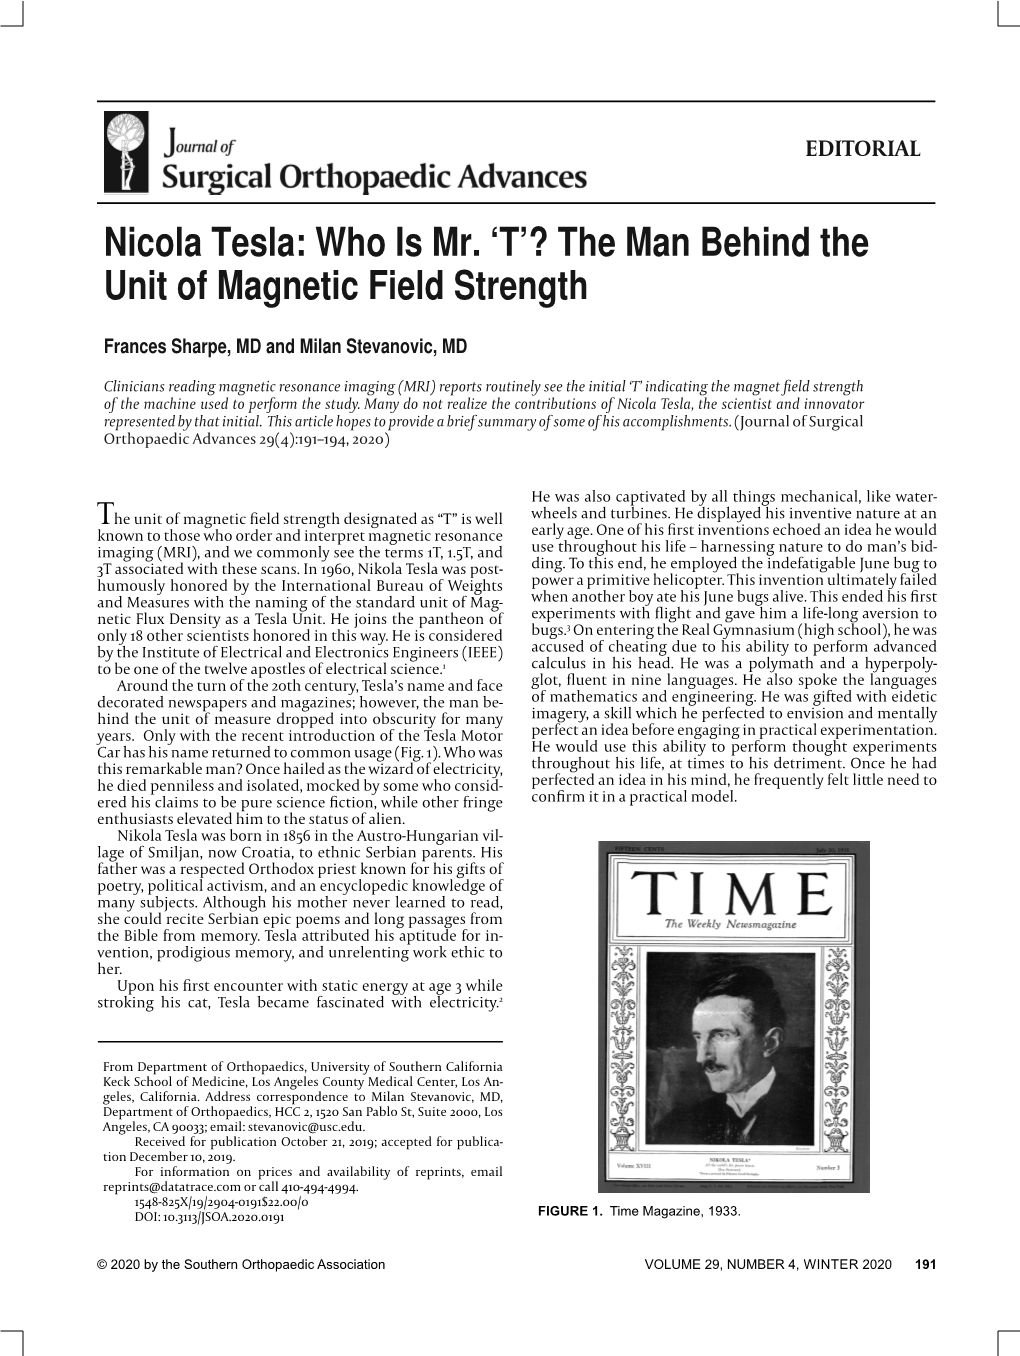 Nicola Tesla: Who Is Mr